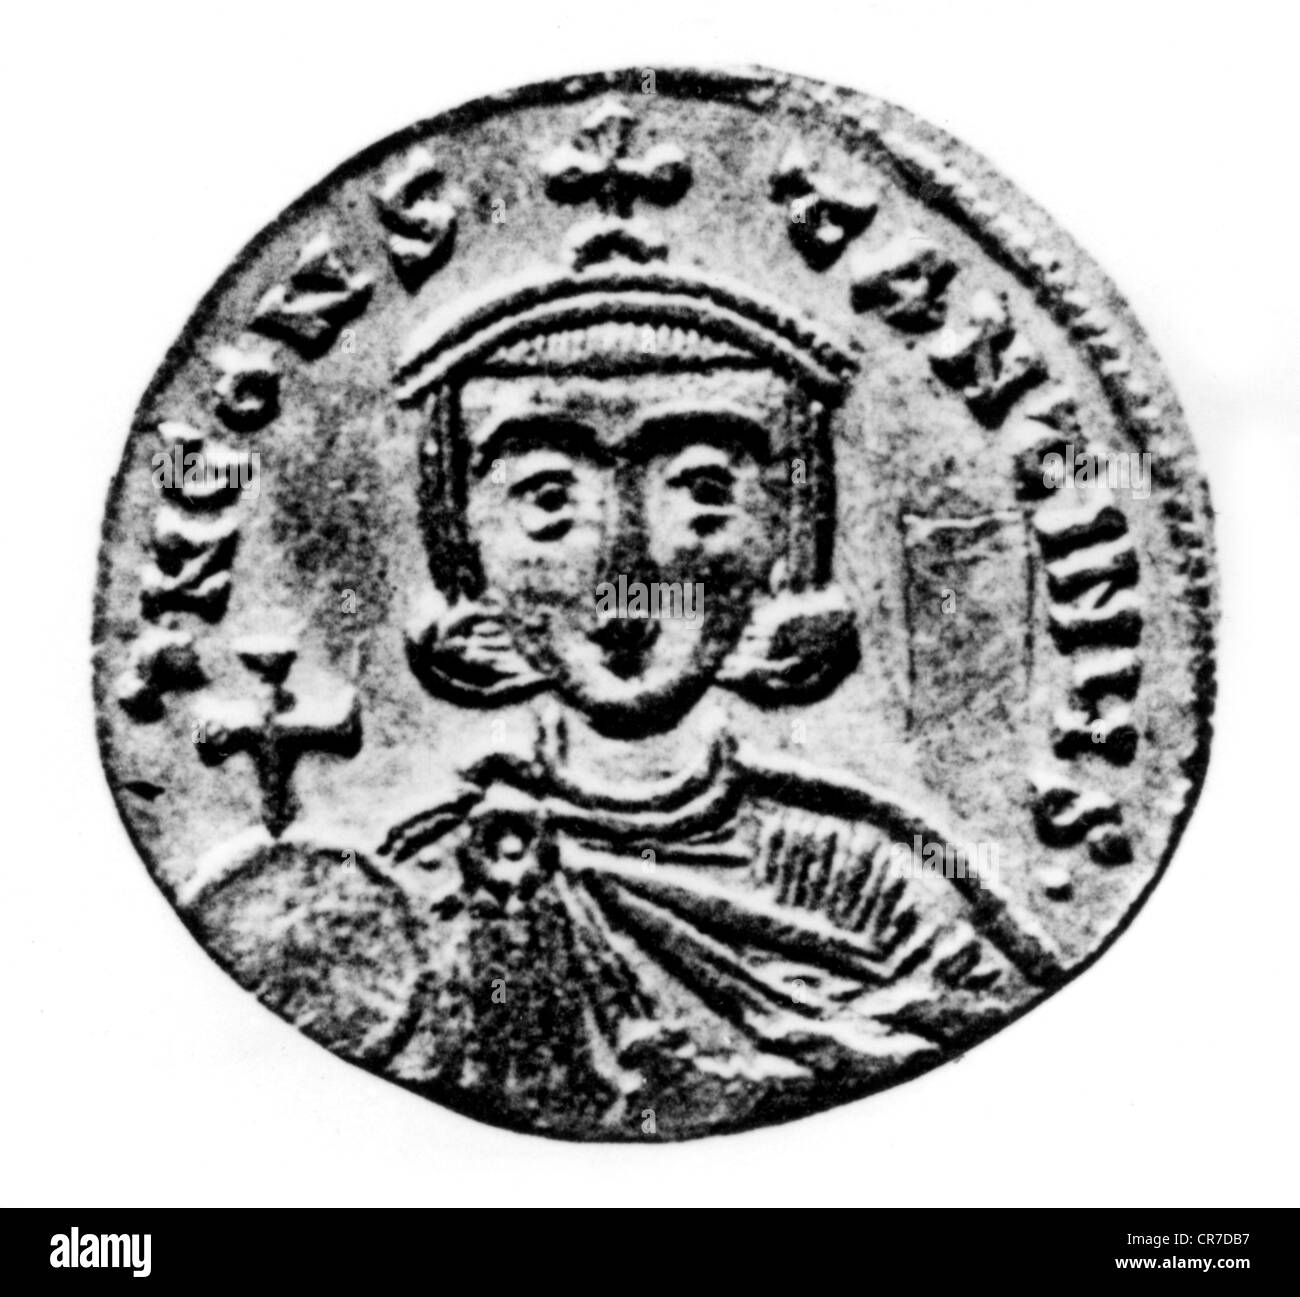 Constantine V, 718 - 14.9.775, Osten römischer Kaiser 18.6.741 - 14.9.775, Portrait, Münze, ca. 740, Isaurien Dynastie, byzantinische Em Stockfoto